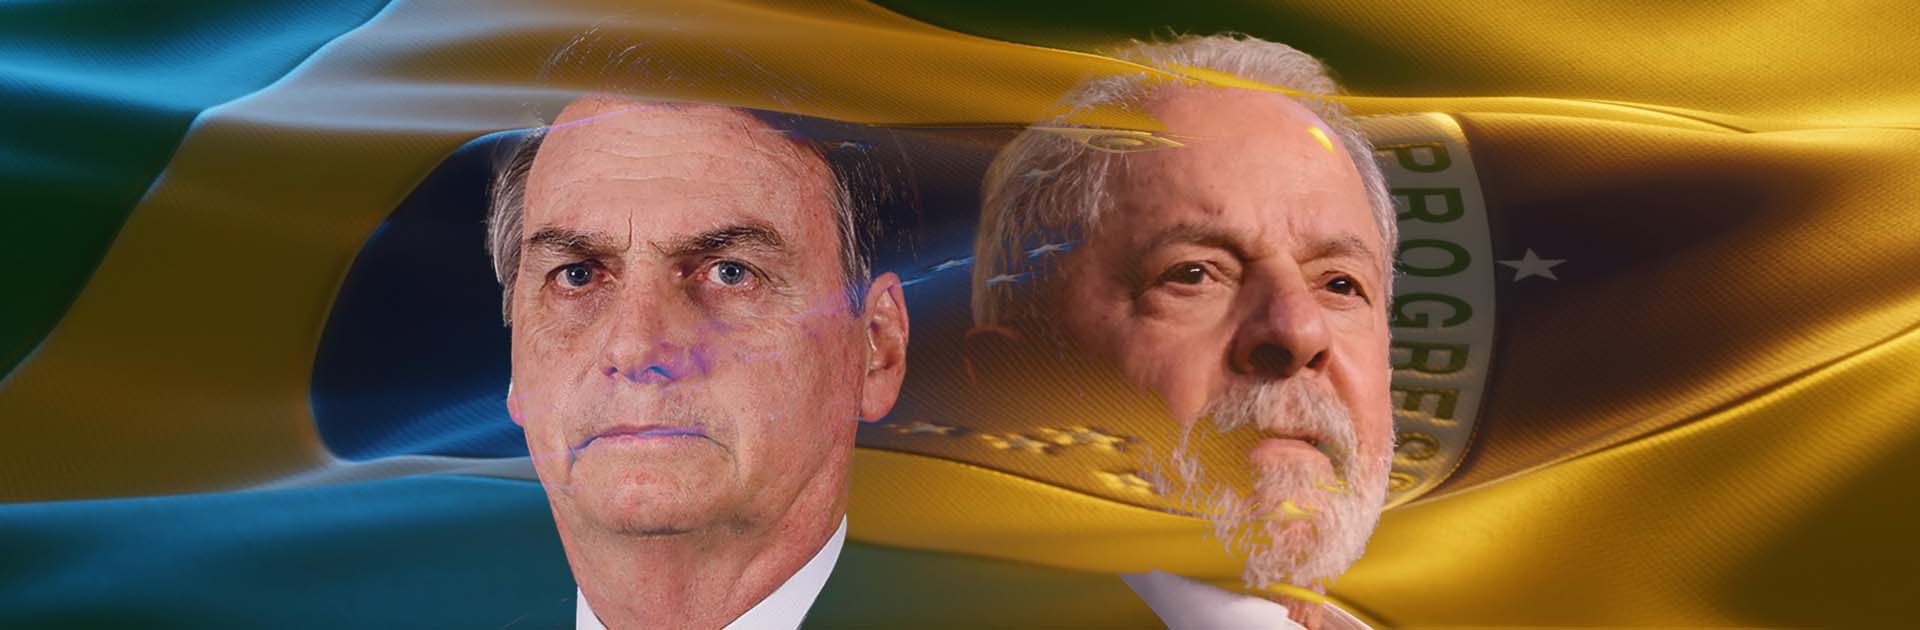 Jair Bolsonaro y Lula da Silva, candidadatos en las elecciones presidenciales de Brasil 2022